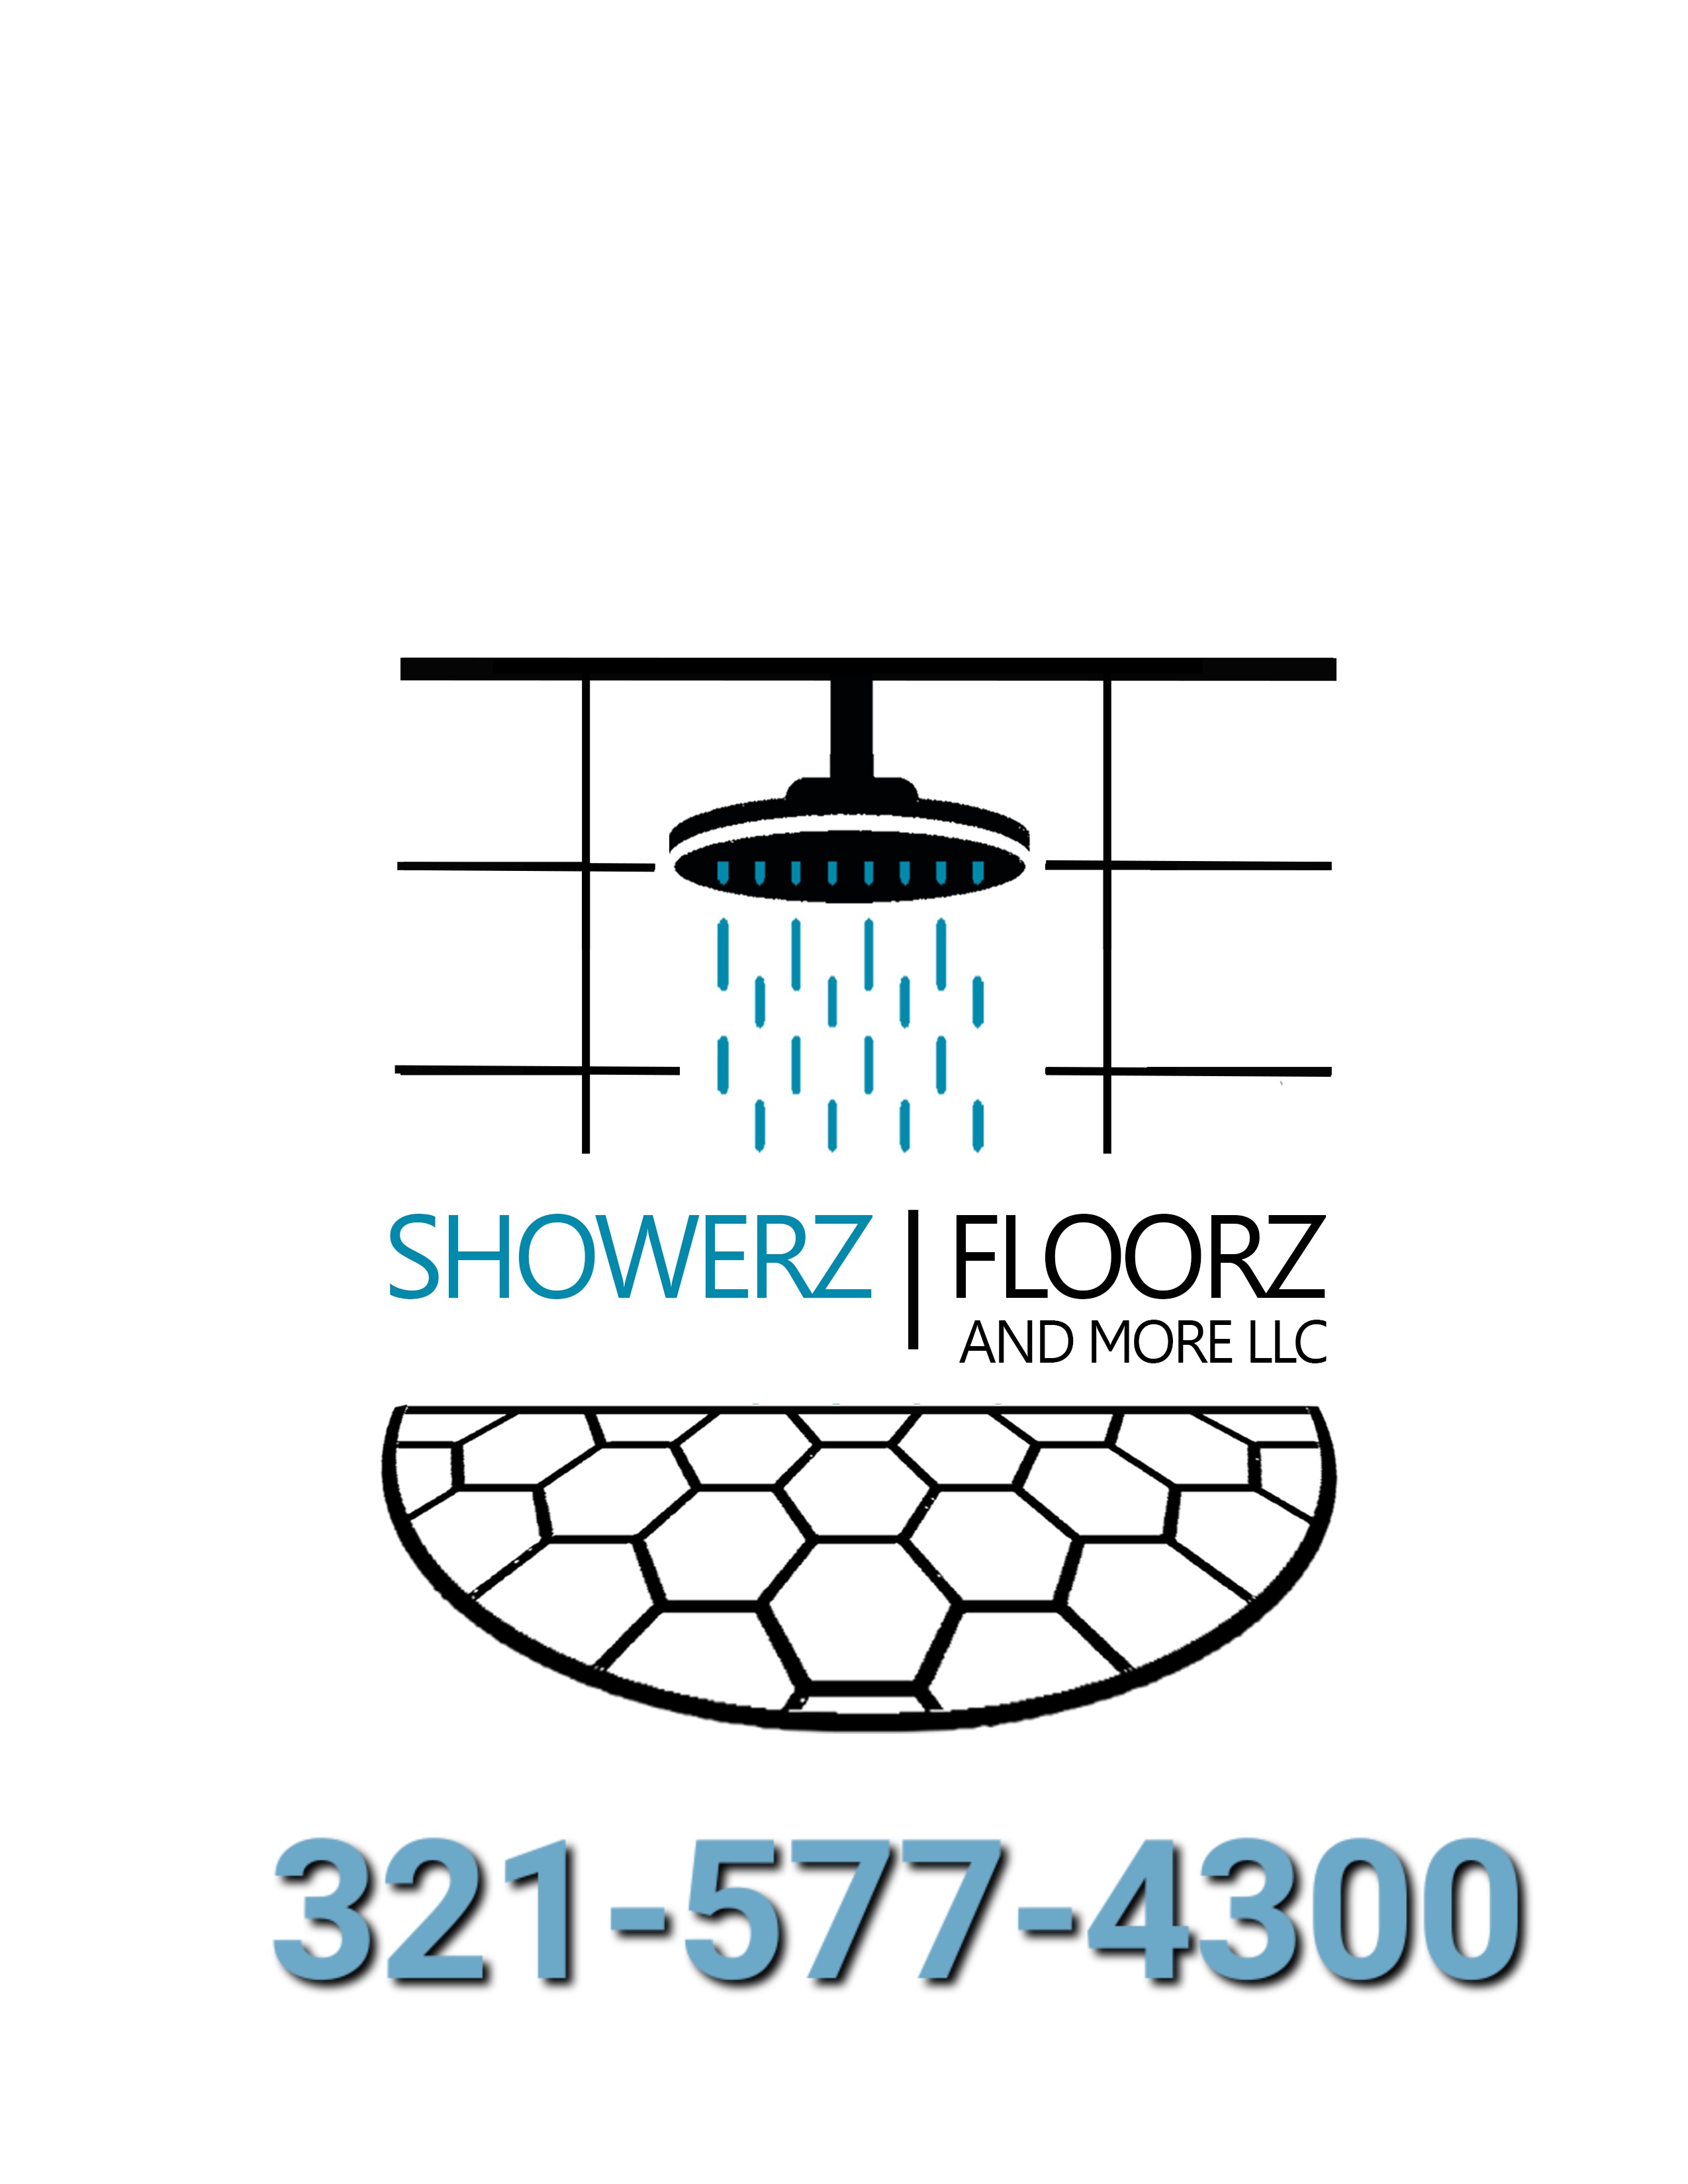 Showerz,Floorz & More LLC Logo